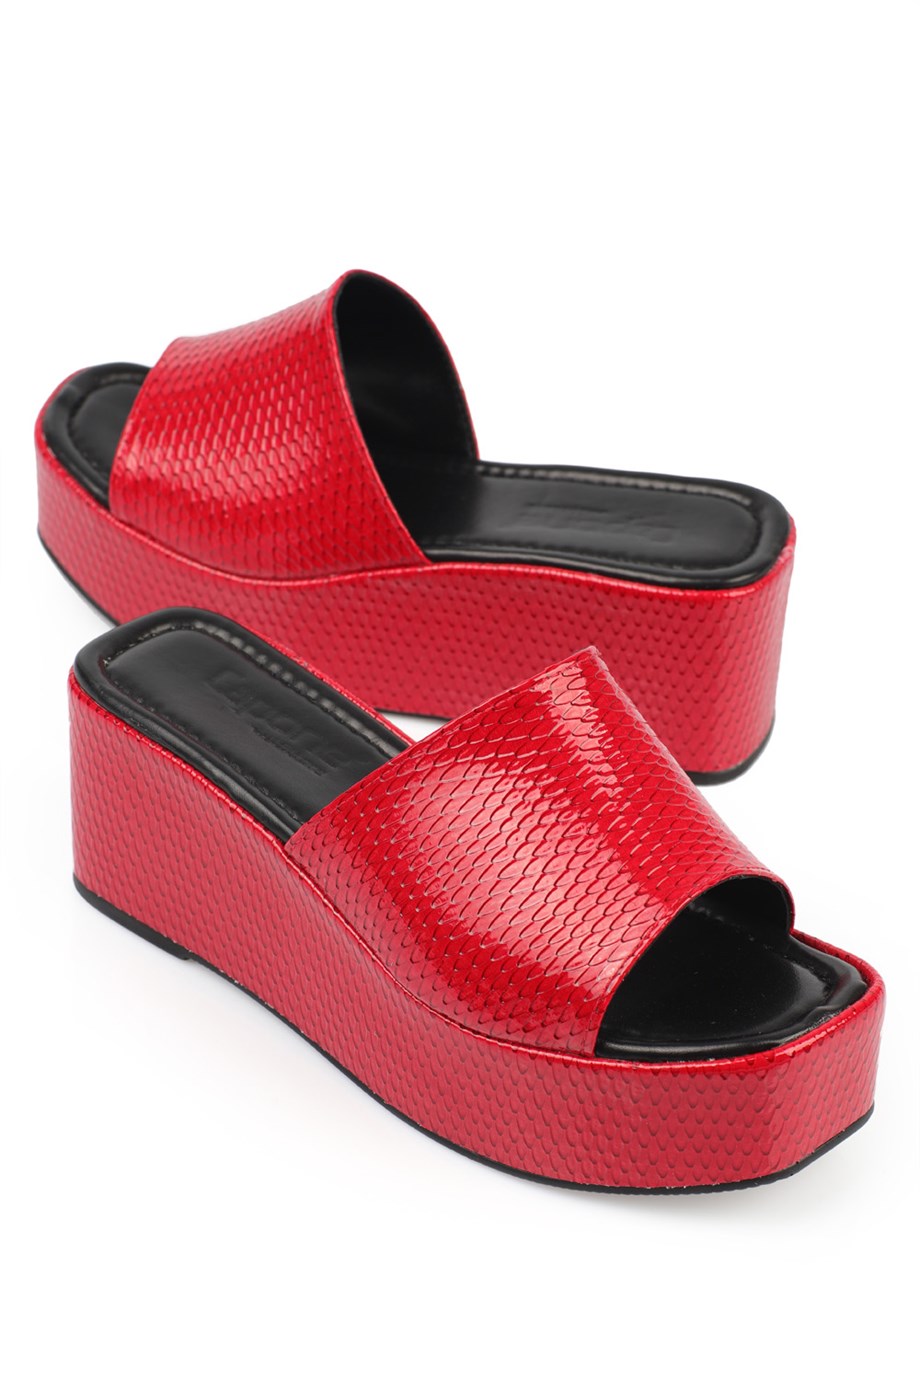 Capone Kırmızı Cilt Dolgu Topuklu Tek Bantlı Kadın Flatform Terlik |  Caponestore